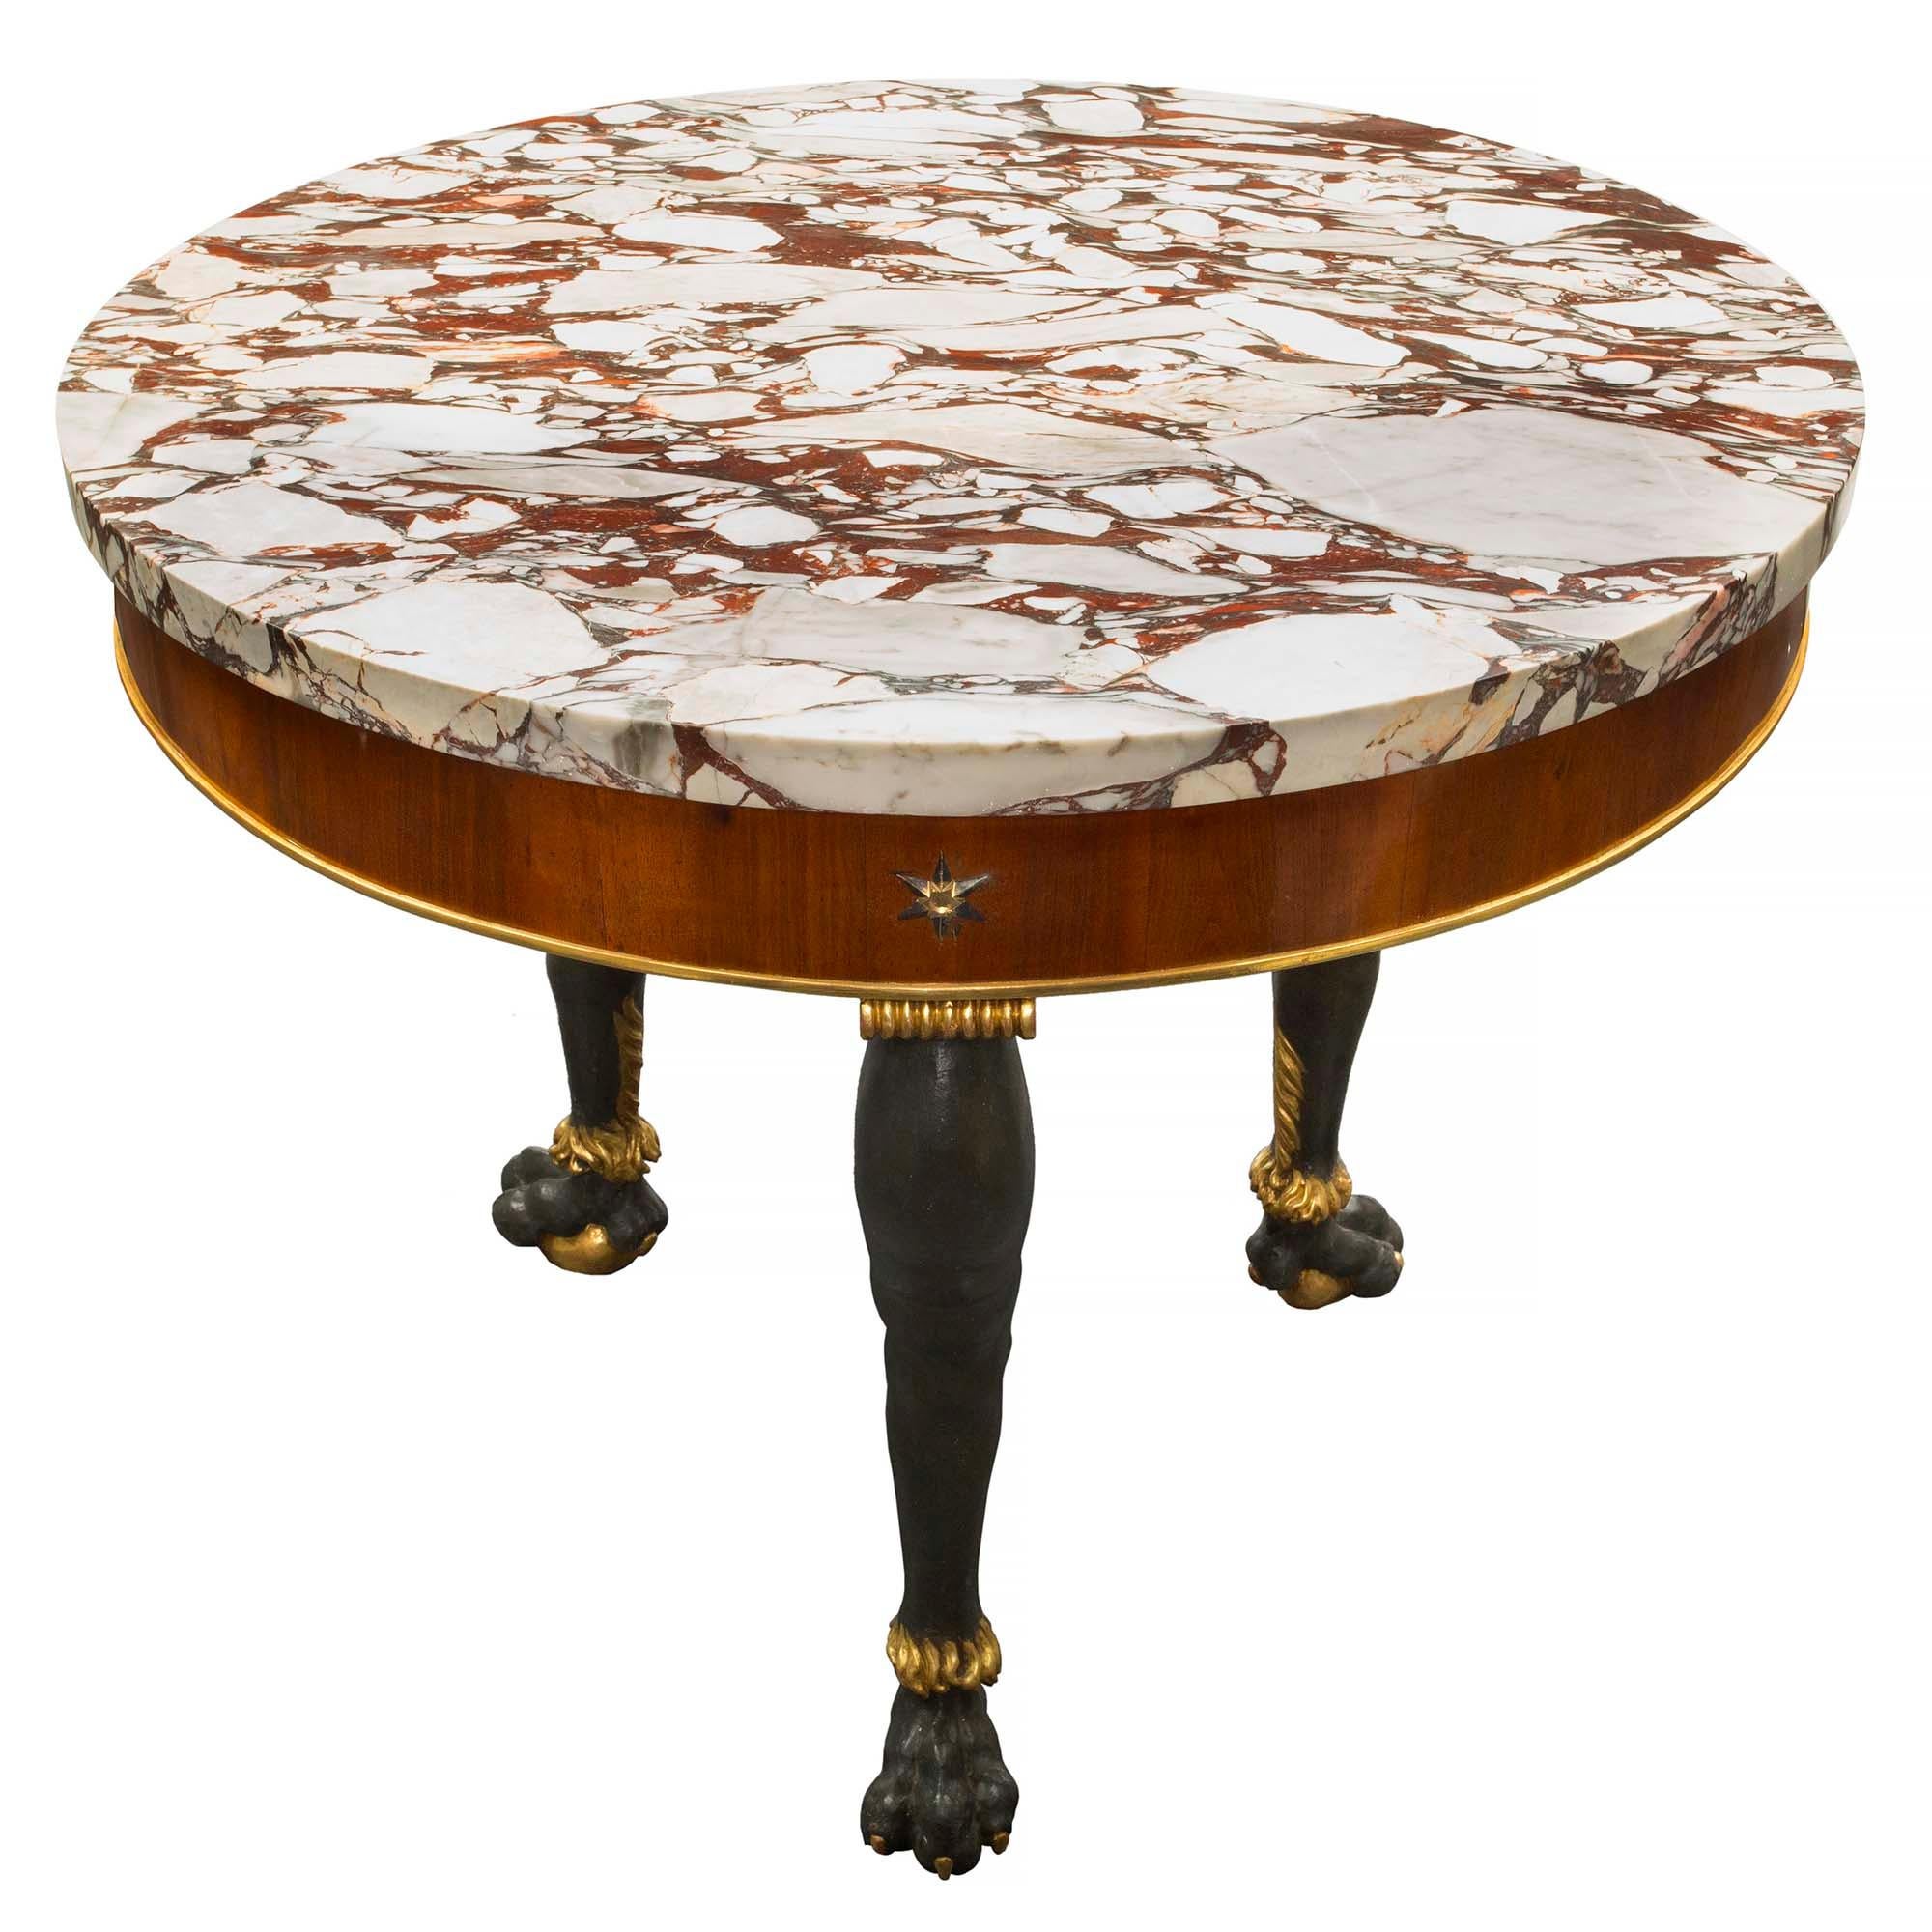 Sensationnel et extrêmement décoratif centre de table italien néo-classique du 19ème siècle. La table est surélevée par trois supports de pieds à boule et griffe en bois doré et vert foncé patiné. Les pattes ont une fourrure brunie, des ongles sur